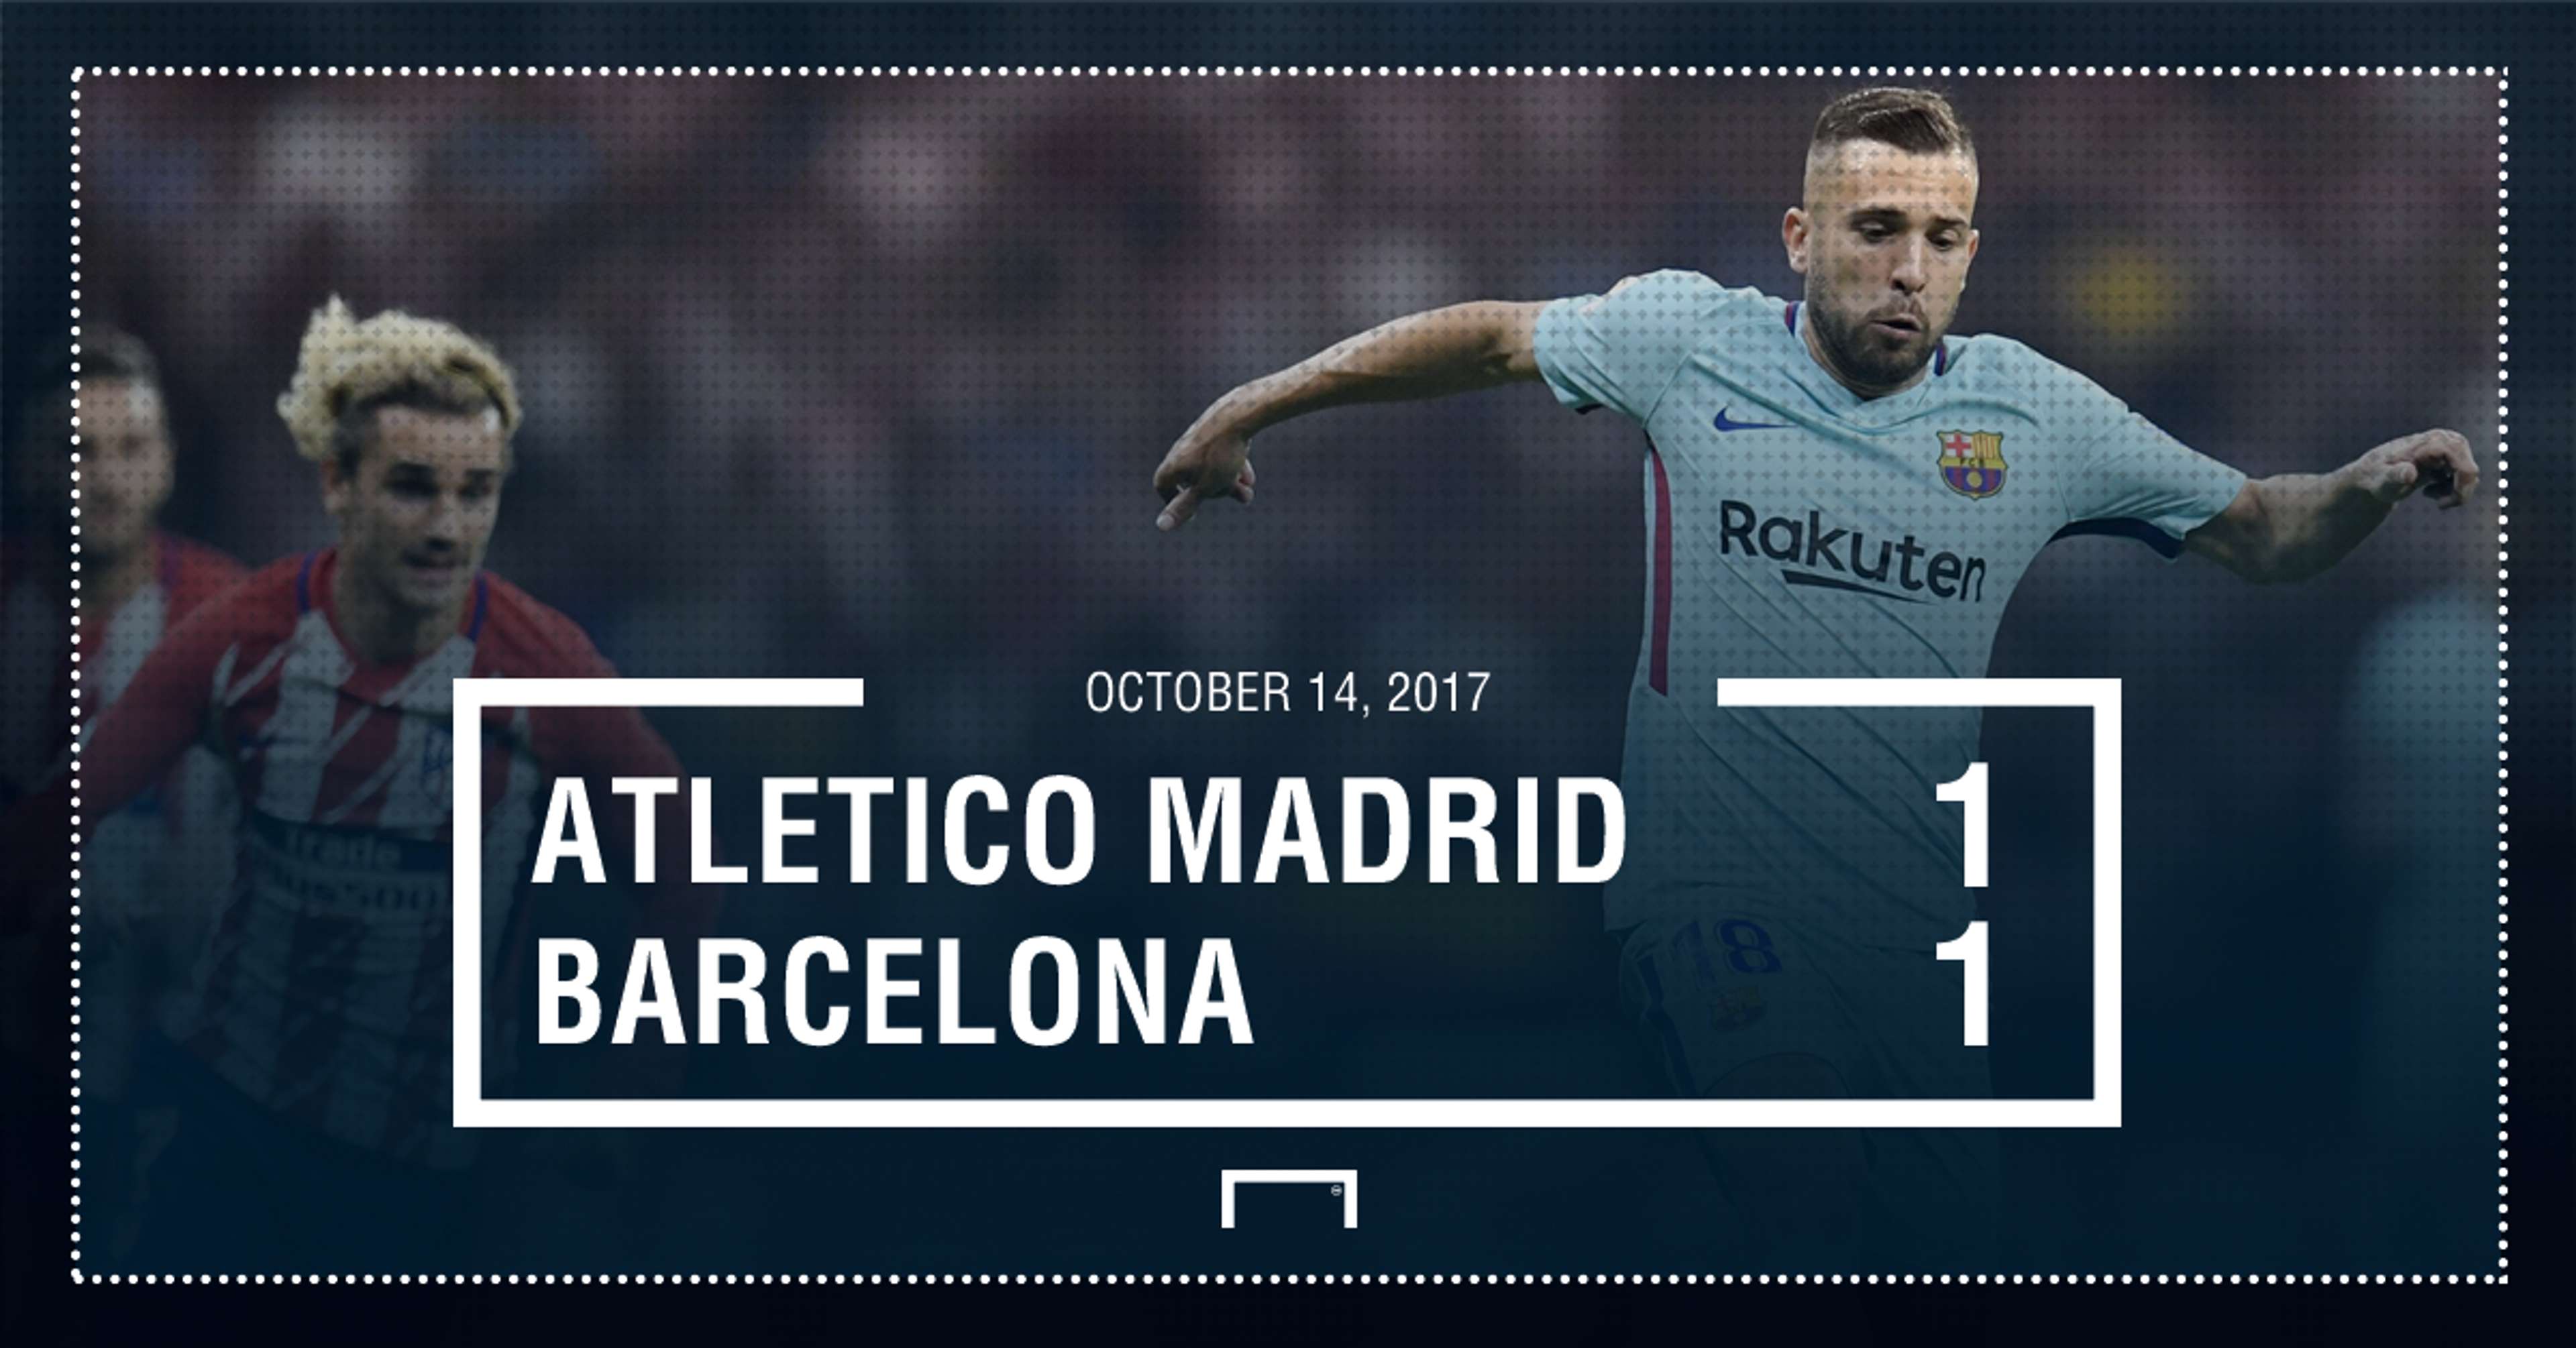 Atletico Barca score